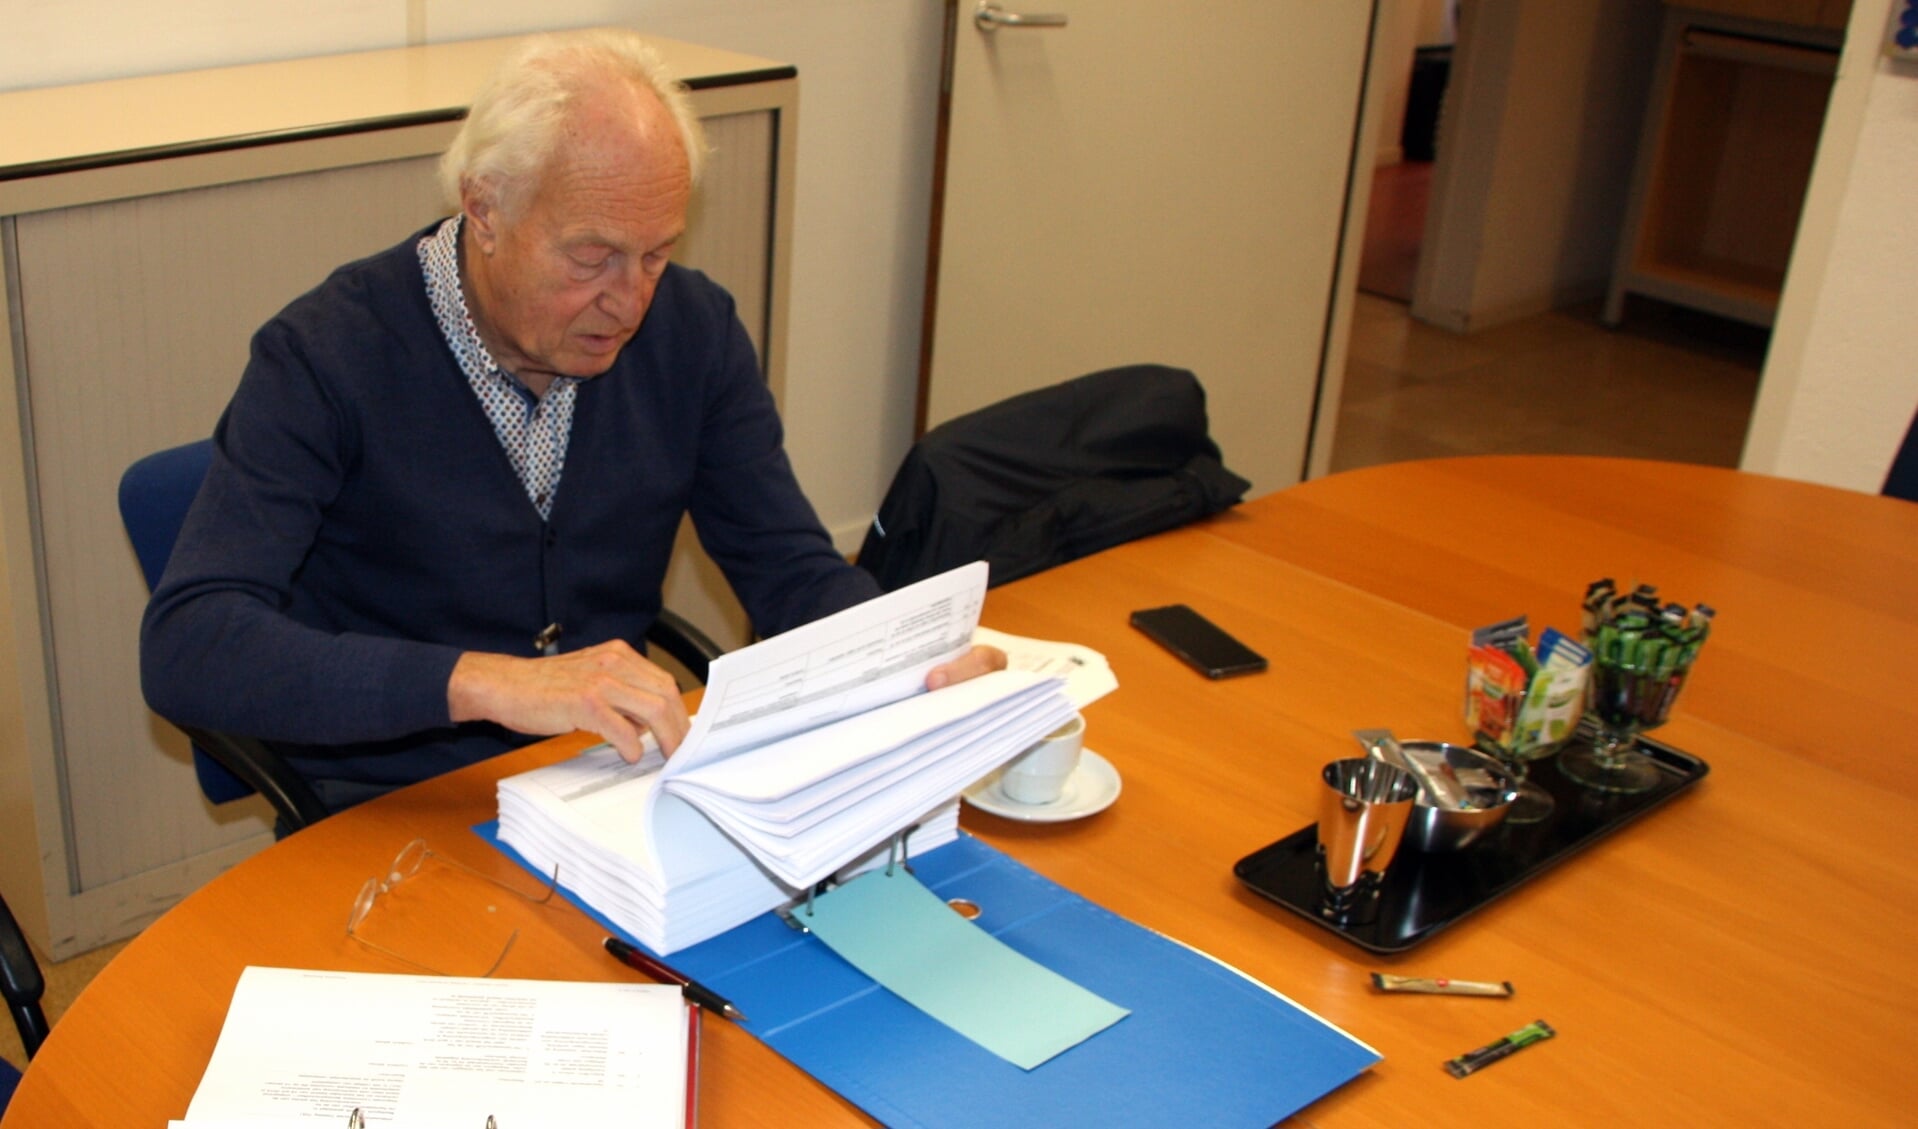 Voorzitter Hans Stol van PIN verdiept zich in de talloze besluiten, die hij alleen via een WOB-verzoek mocht inzien. | Foto: Wim Siemerink